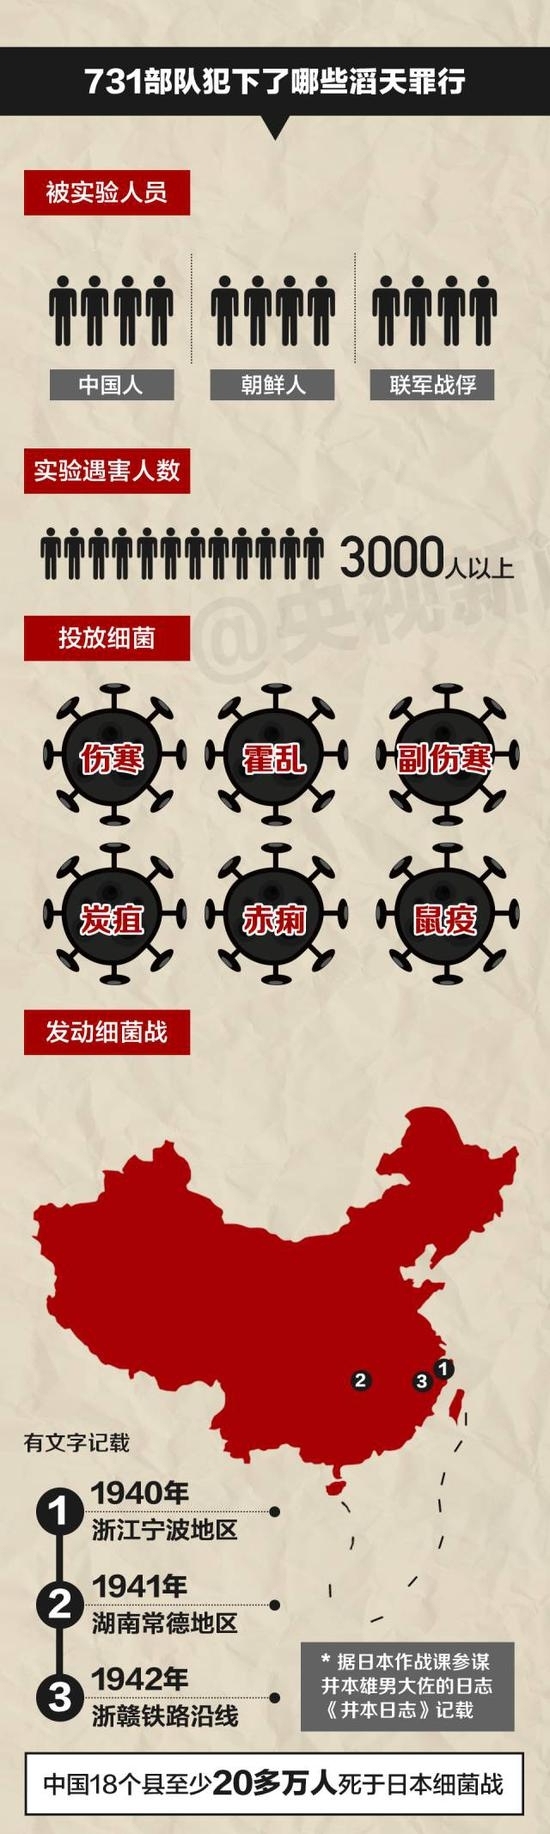 《巍城》亮相第27届上海电视节 再现“宁波细菌战”引关注